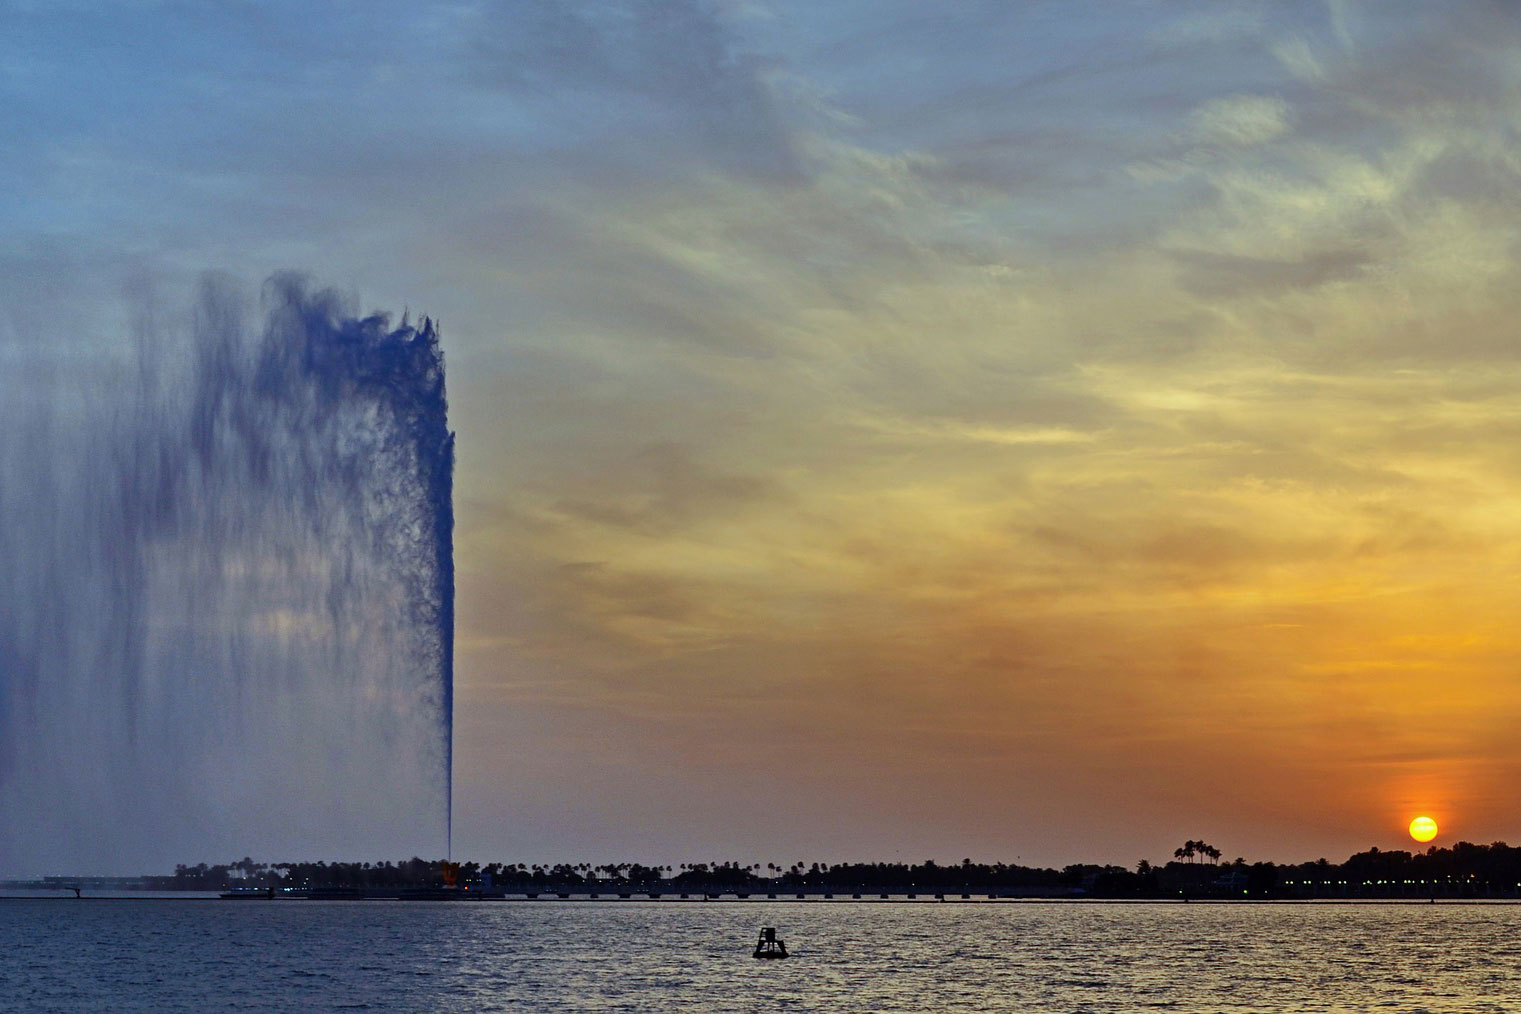 King Fahd Fountain